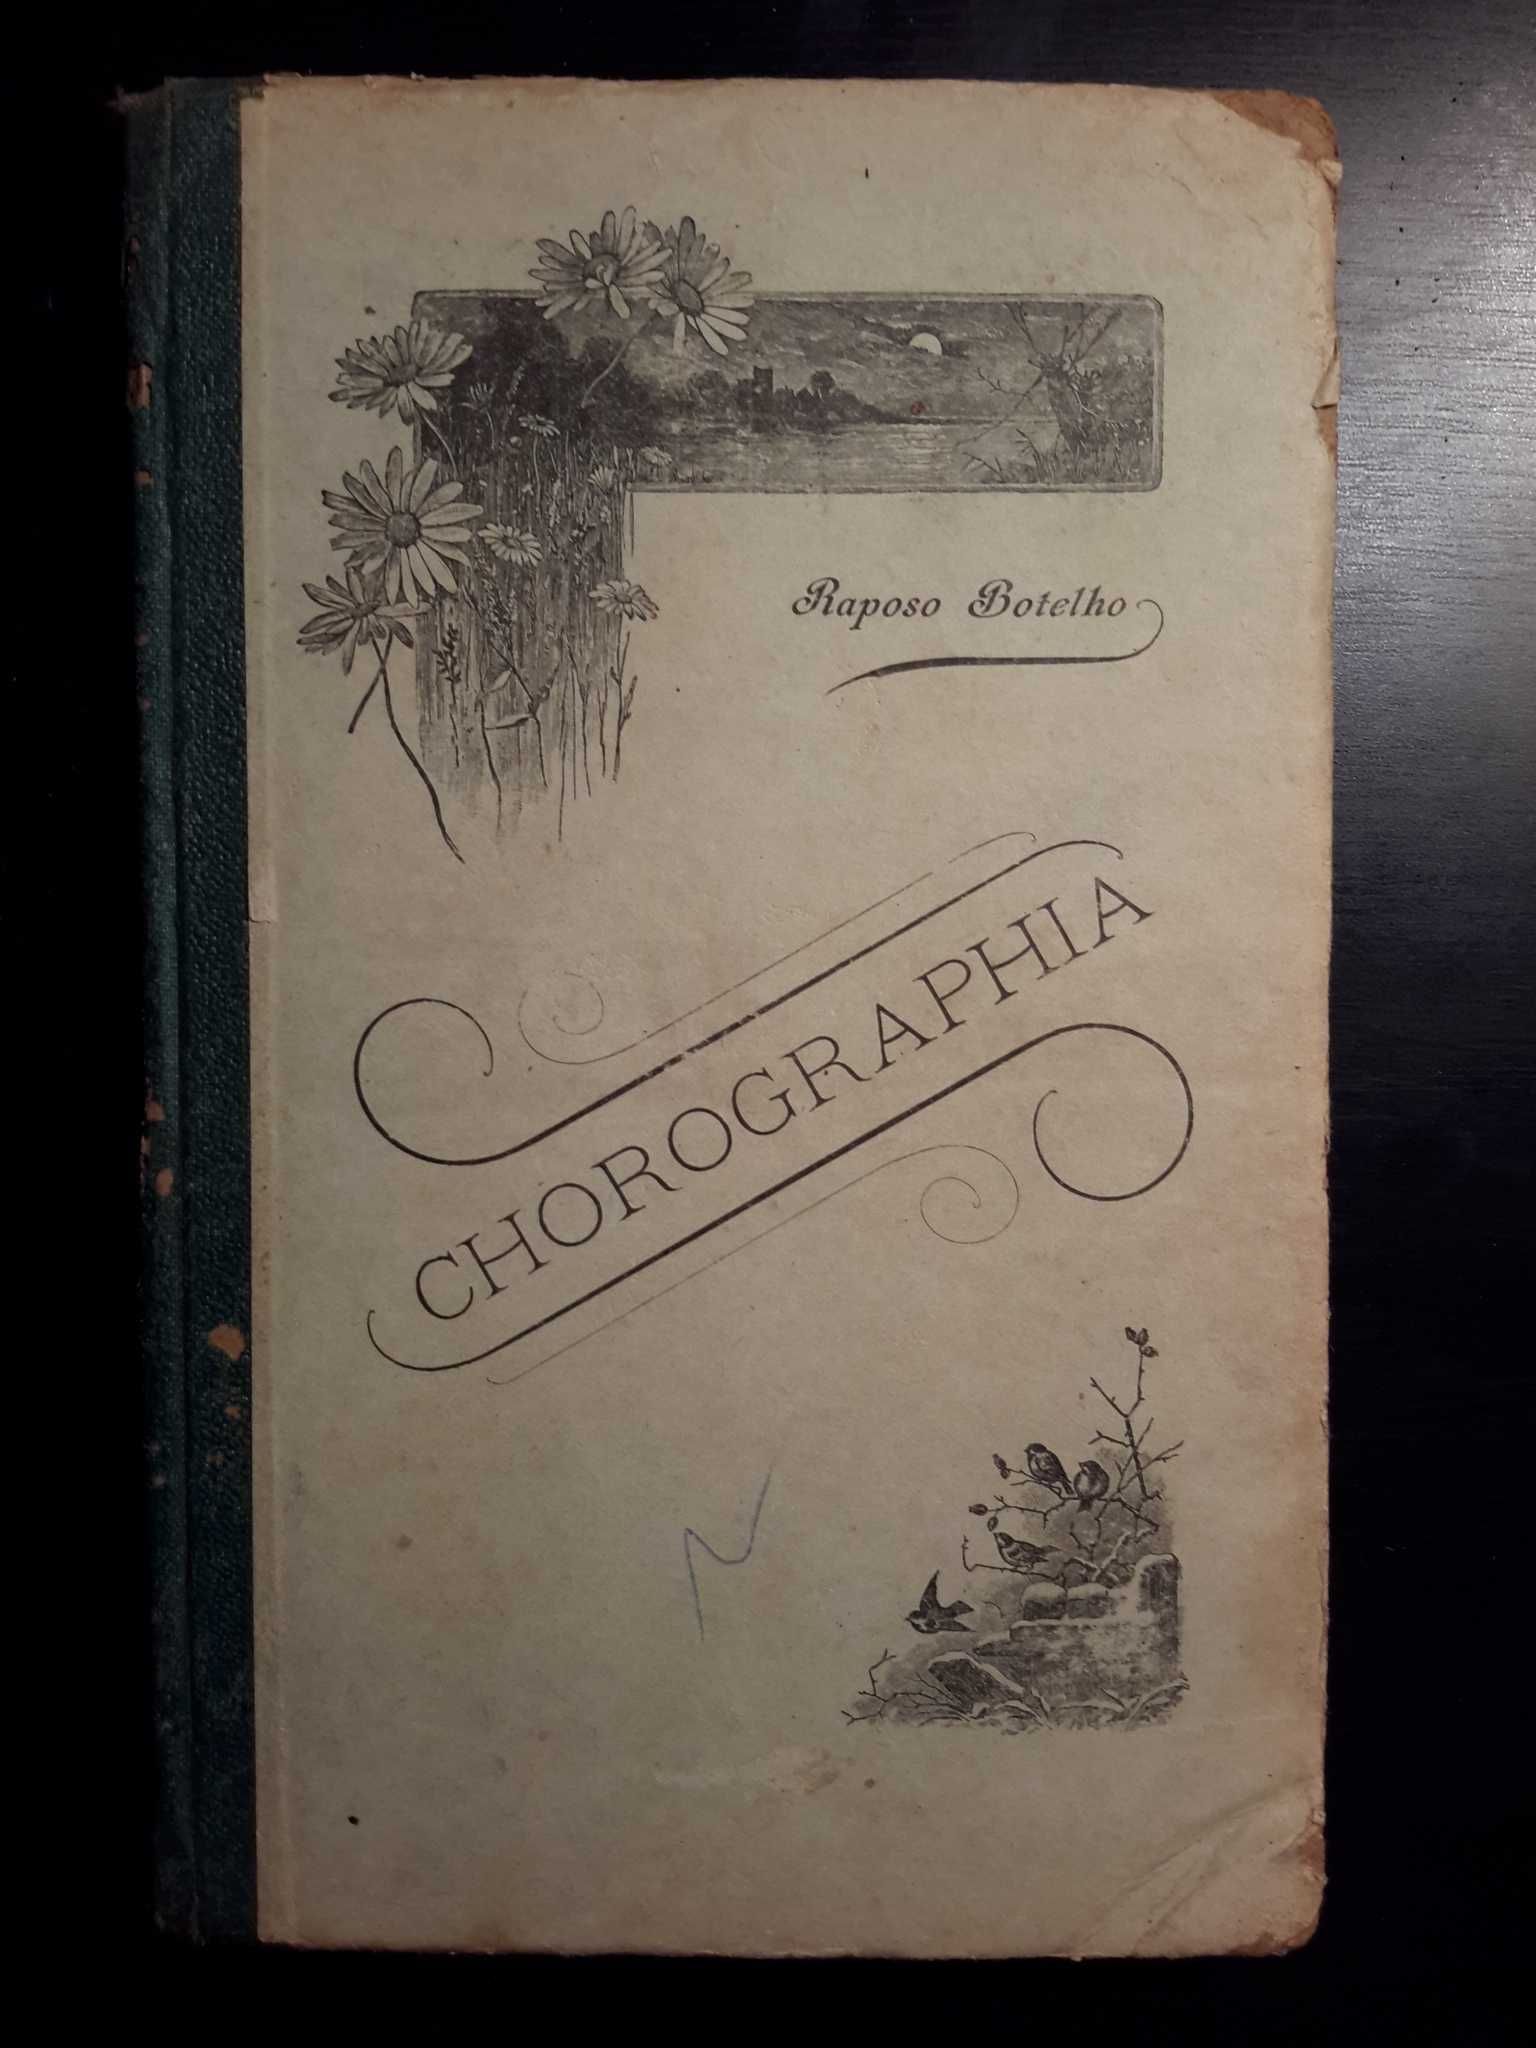 Raposo Botelho - Chorographia (1903)